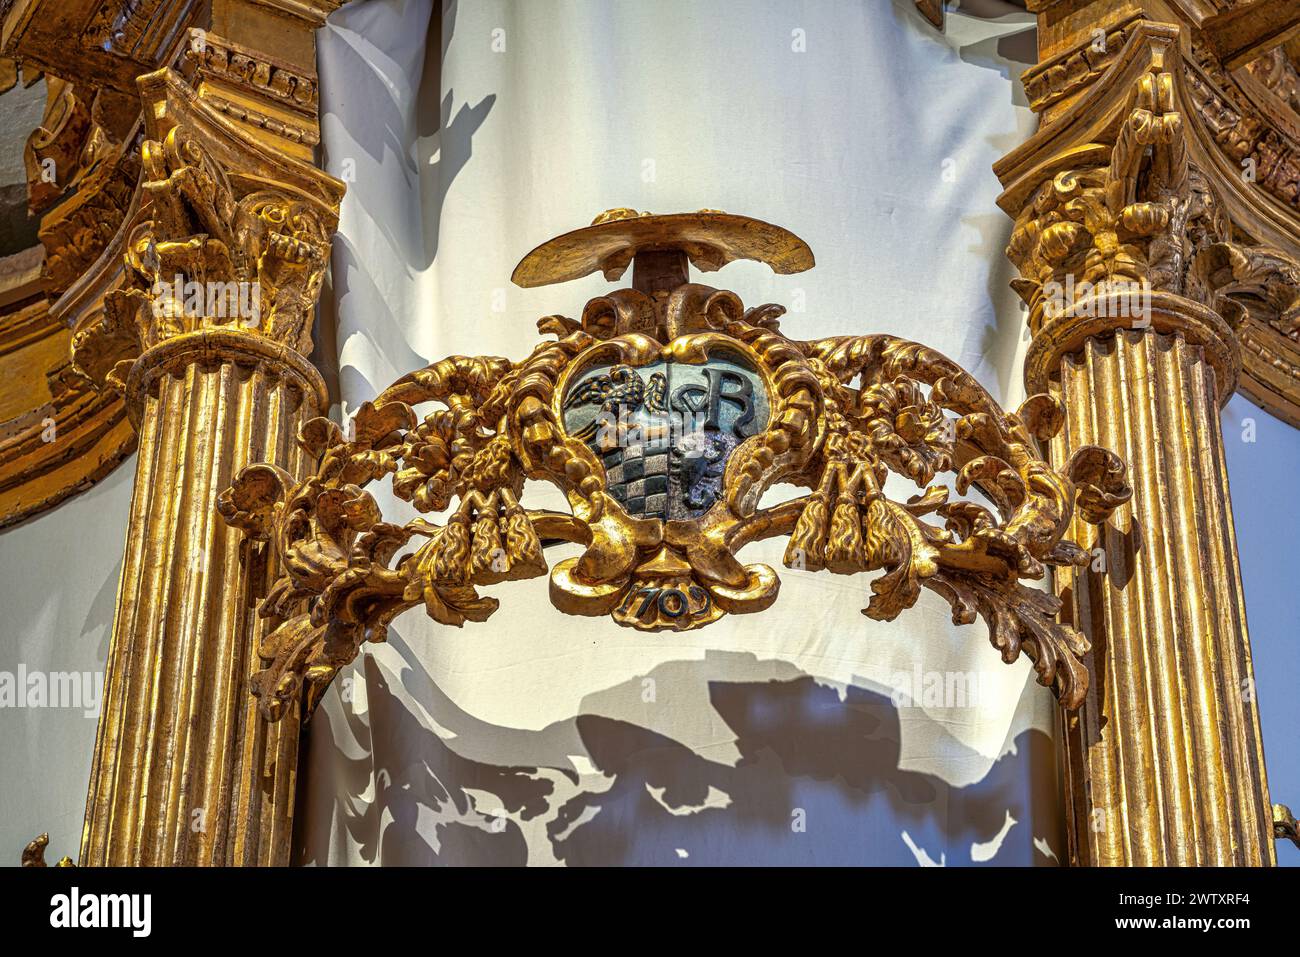 Particolare dell'organo storico, distrutto e ricostruito dopo il terremoto del 2009, nella Basilica di Santa Maria di Collemaggio. L'Aquila, Abruzzo, Italia Foto Stock